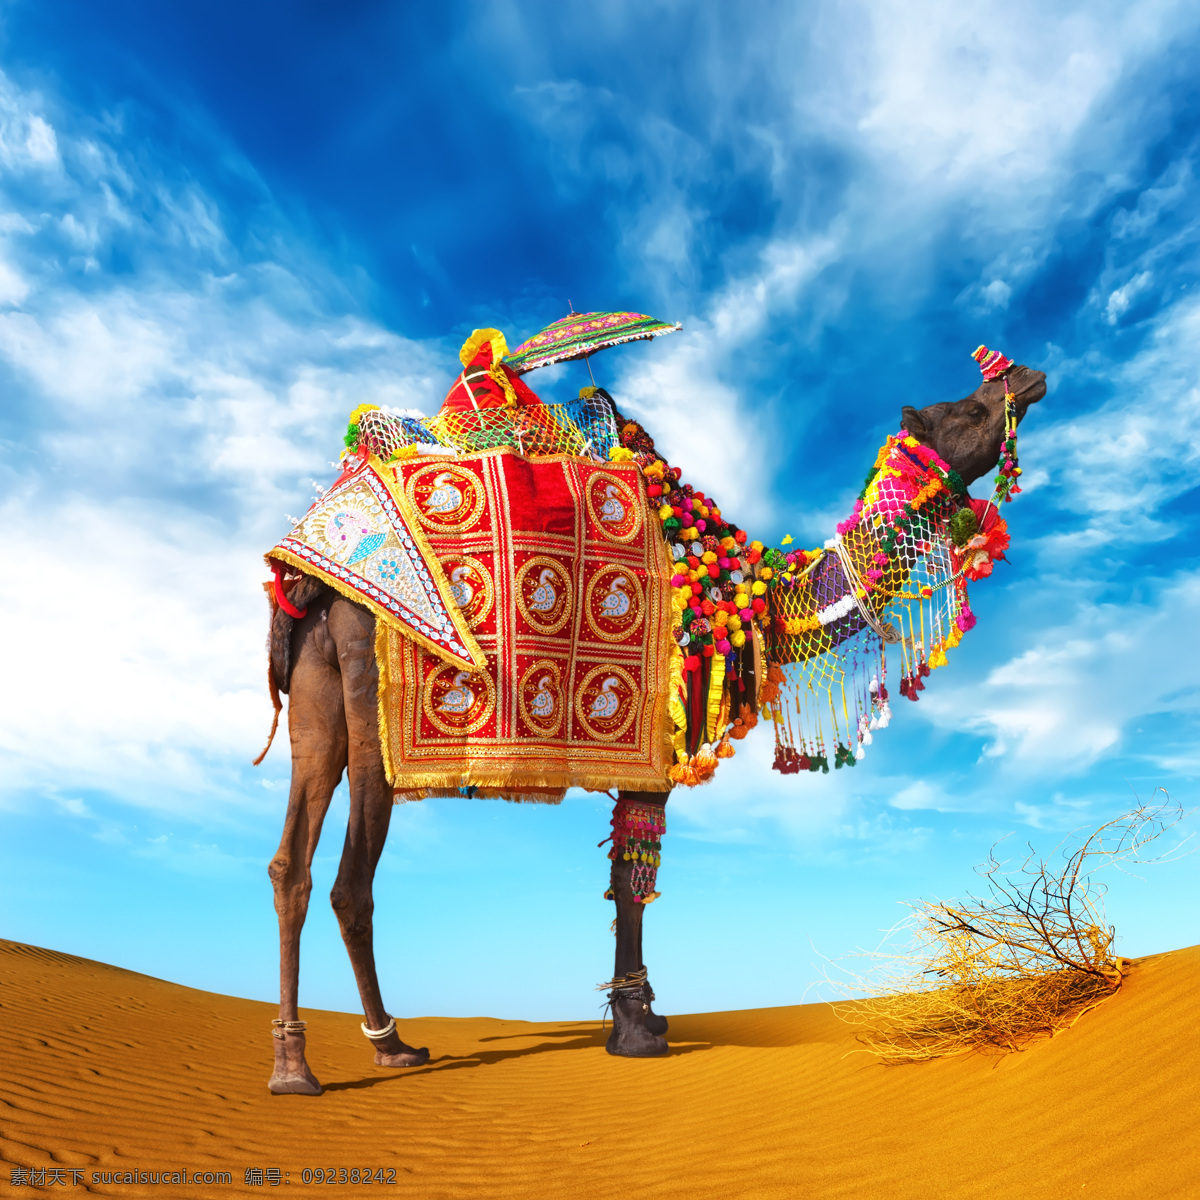 沙漠 上 骆驼 沙漠风景 动物摄影 动物世界 陆地动物 生物世界